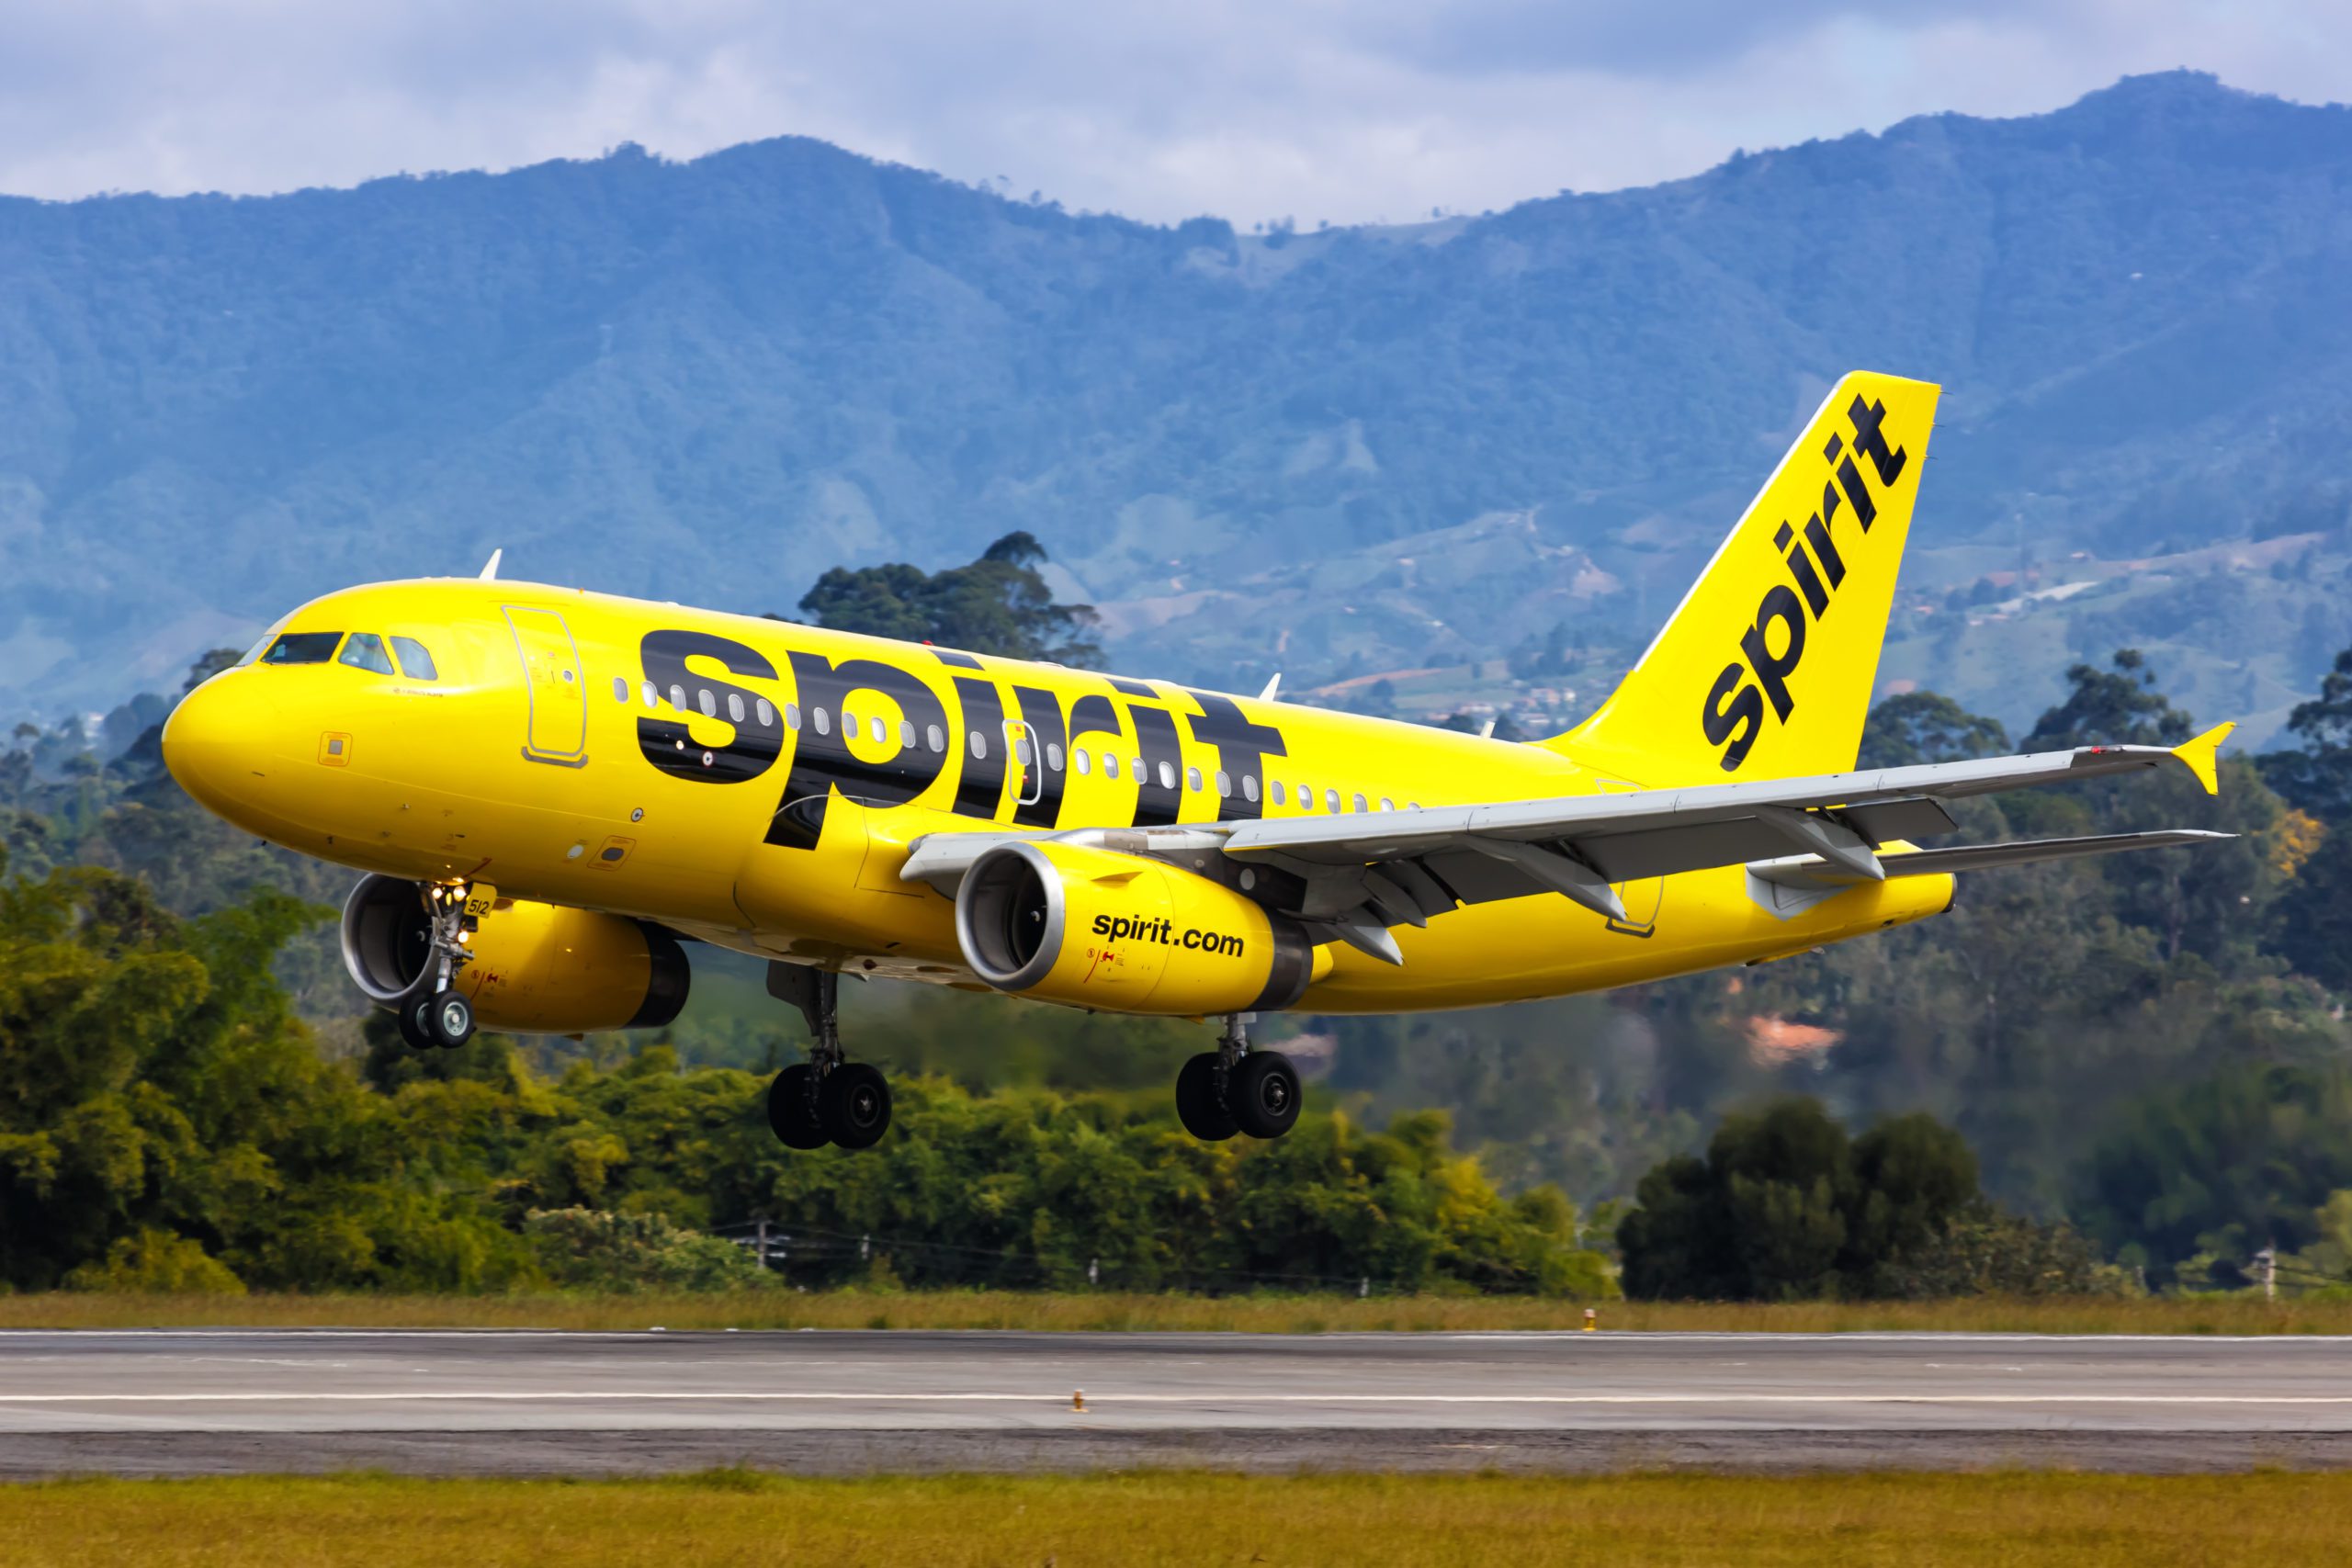 JetBlue to Buy Spirit Airlines for $3.8 Billion